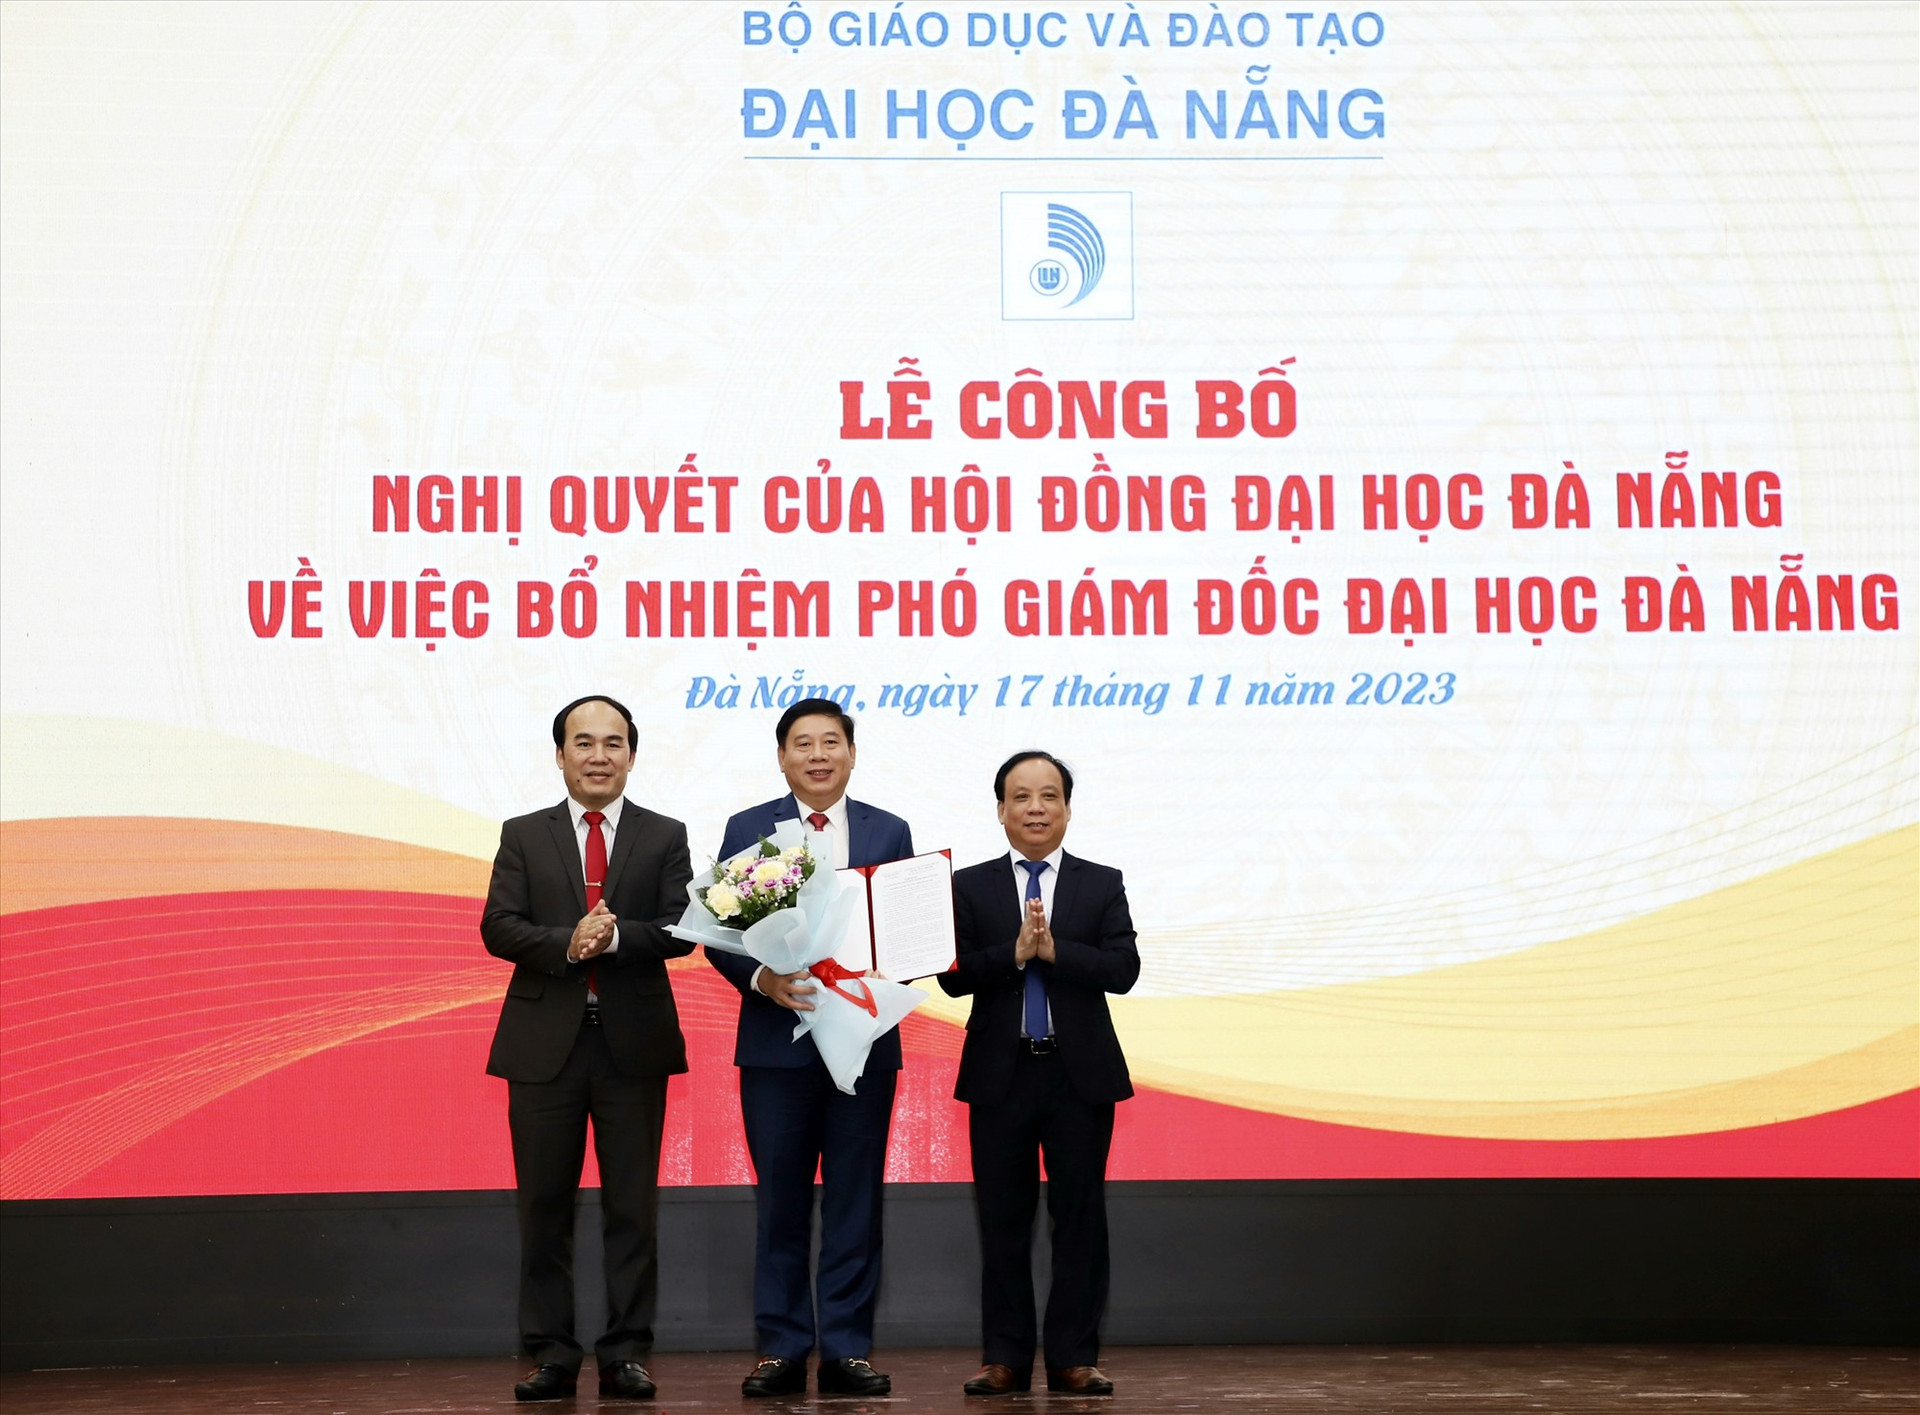 Lãnh đạo Đại học Đà Nẵng trao quyết định Phó Giám đốc cho PGS.TS Nguyễn Mạnh Toàn (ôm hoa). Ảnh VS